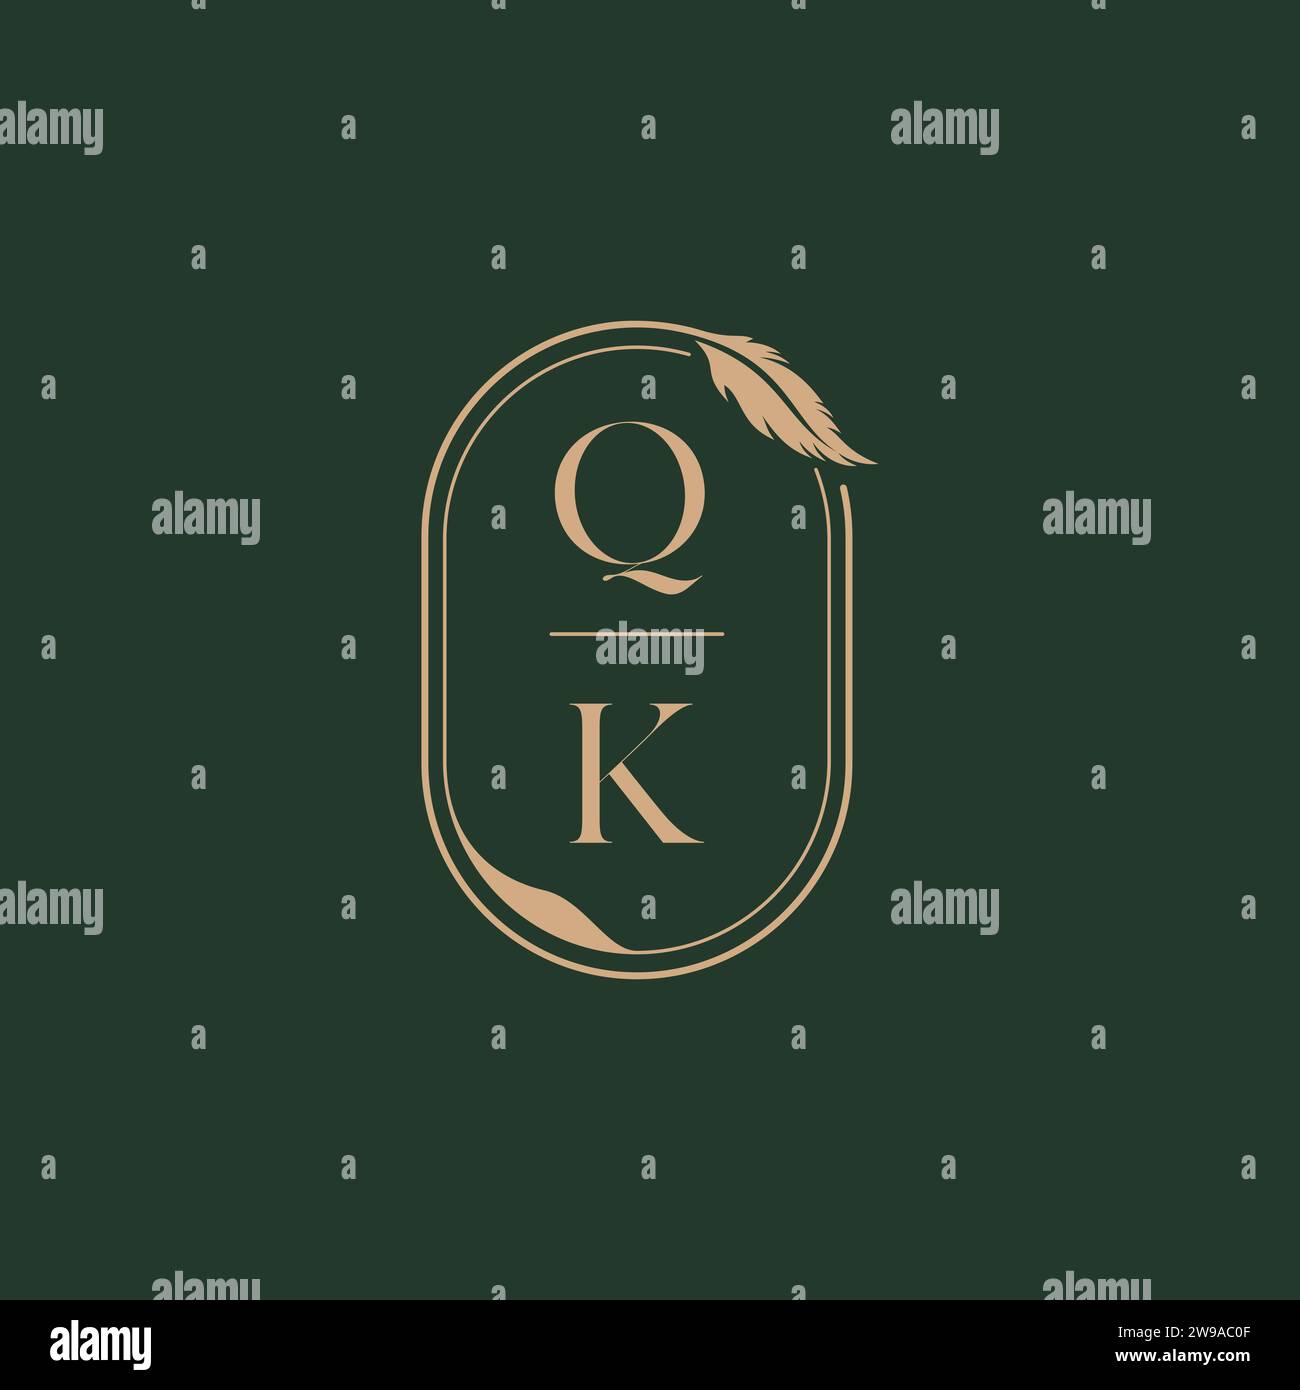 QK feather concept wedding monogram logo design ideas as inspiration Stock Vector